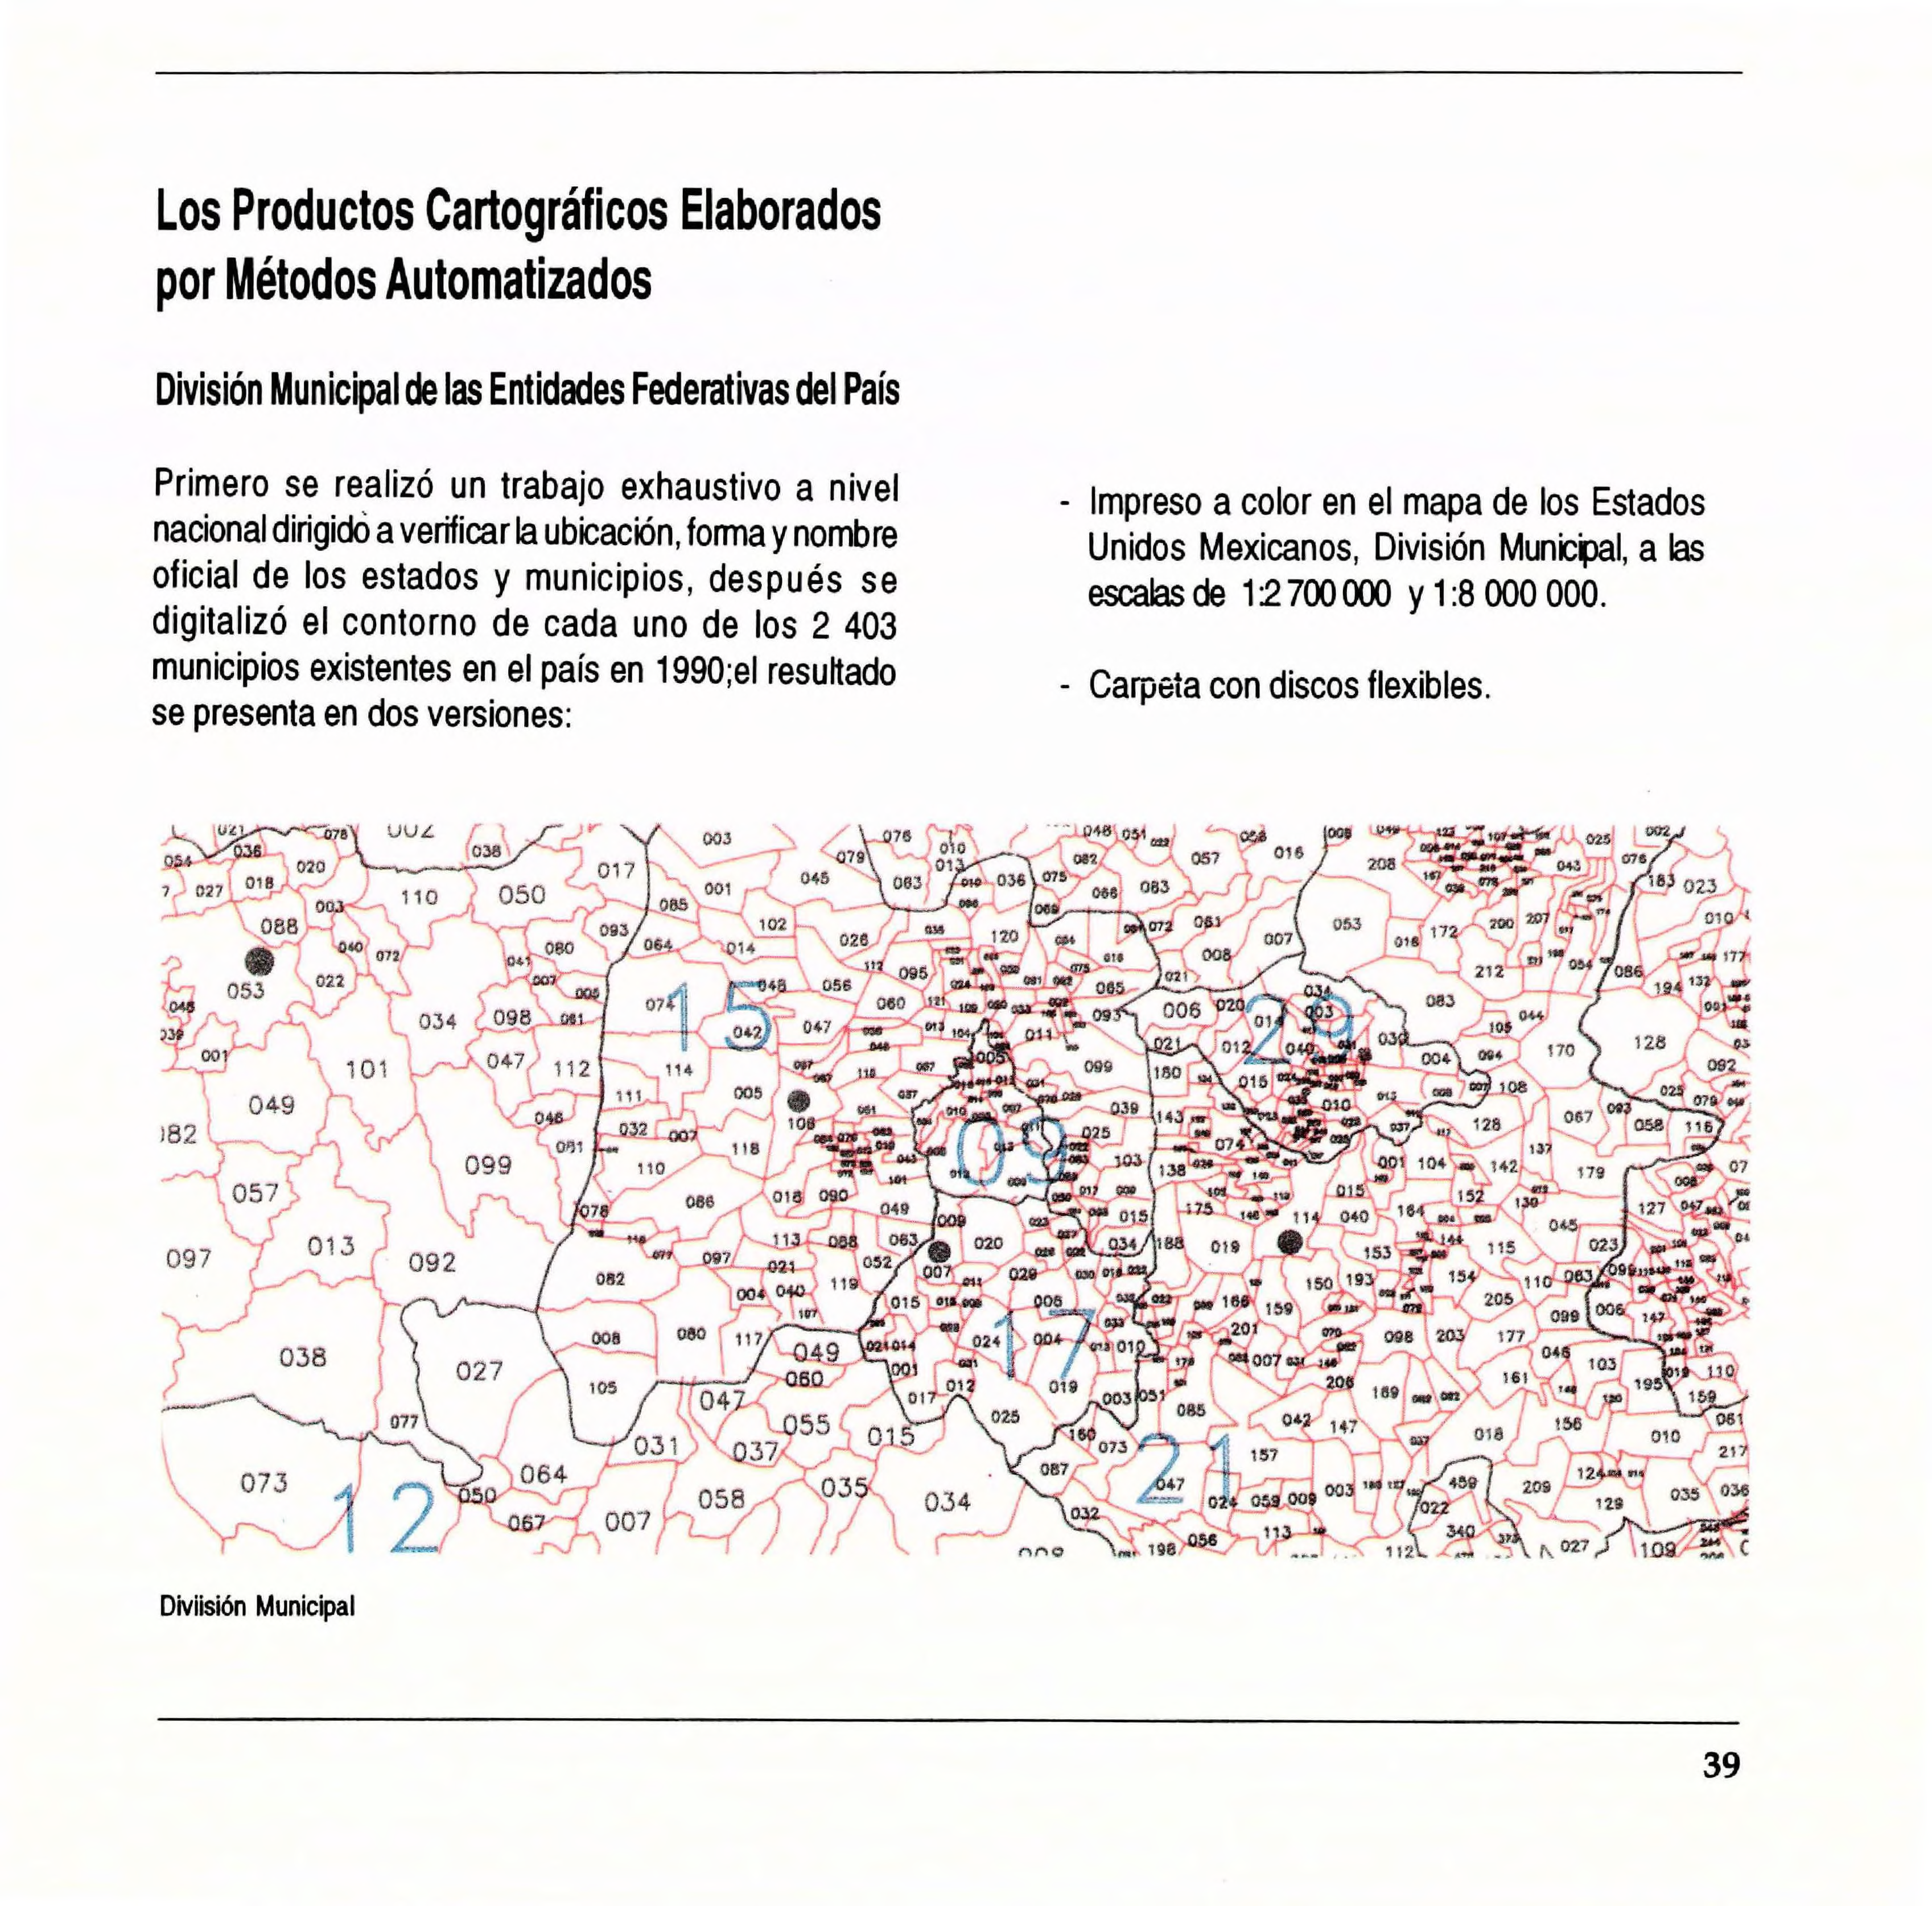 Los Productos Cartográficos Elaborados por Métodos Automatizados División Municipal de las Entidades Federativas del País Primero se realizó un trabajo exhaustivo a nivel - Impreso a color en el mapa